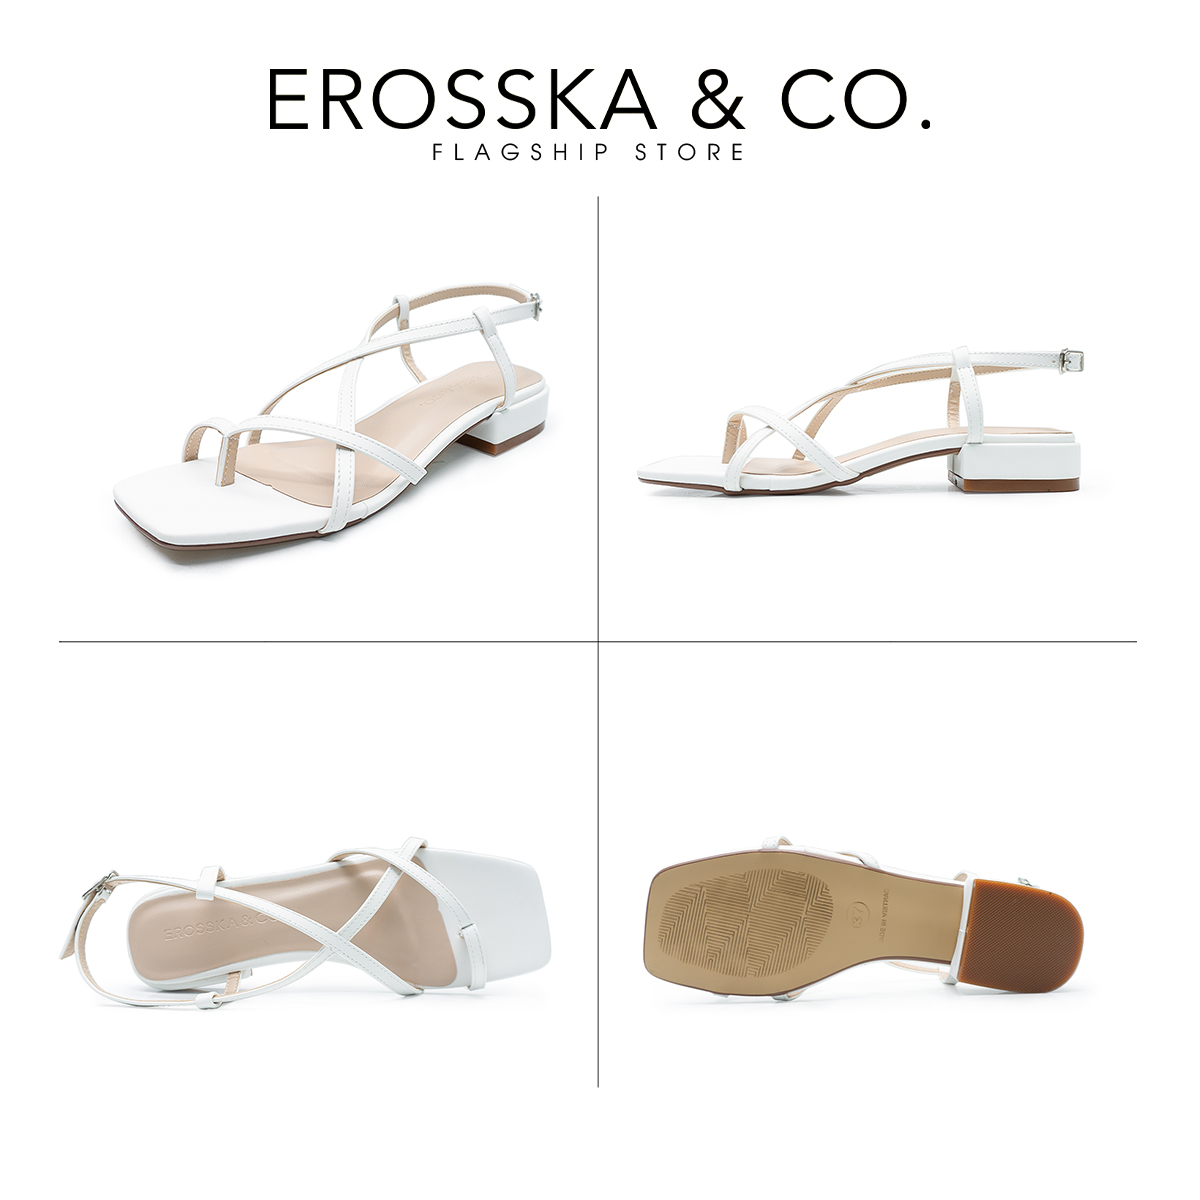 Erosska - Giày sandal cao gót quai mảnh mũi vuông cao 2,5cm EB040